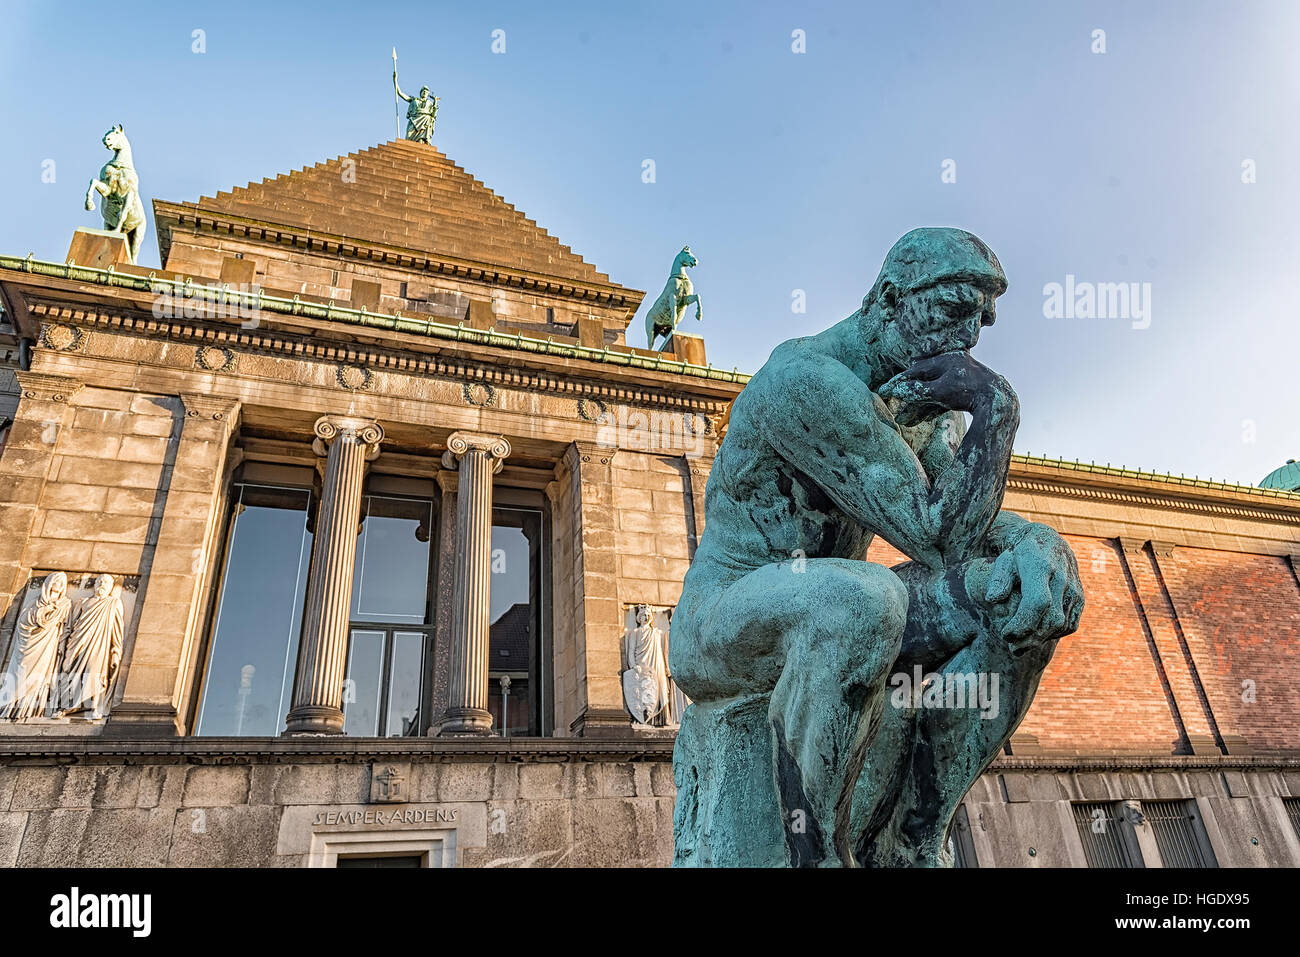 La Nueva Gliptoteca Carlsberg es un museo de arte en Copenhague, Dinamarca. Foto de stock